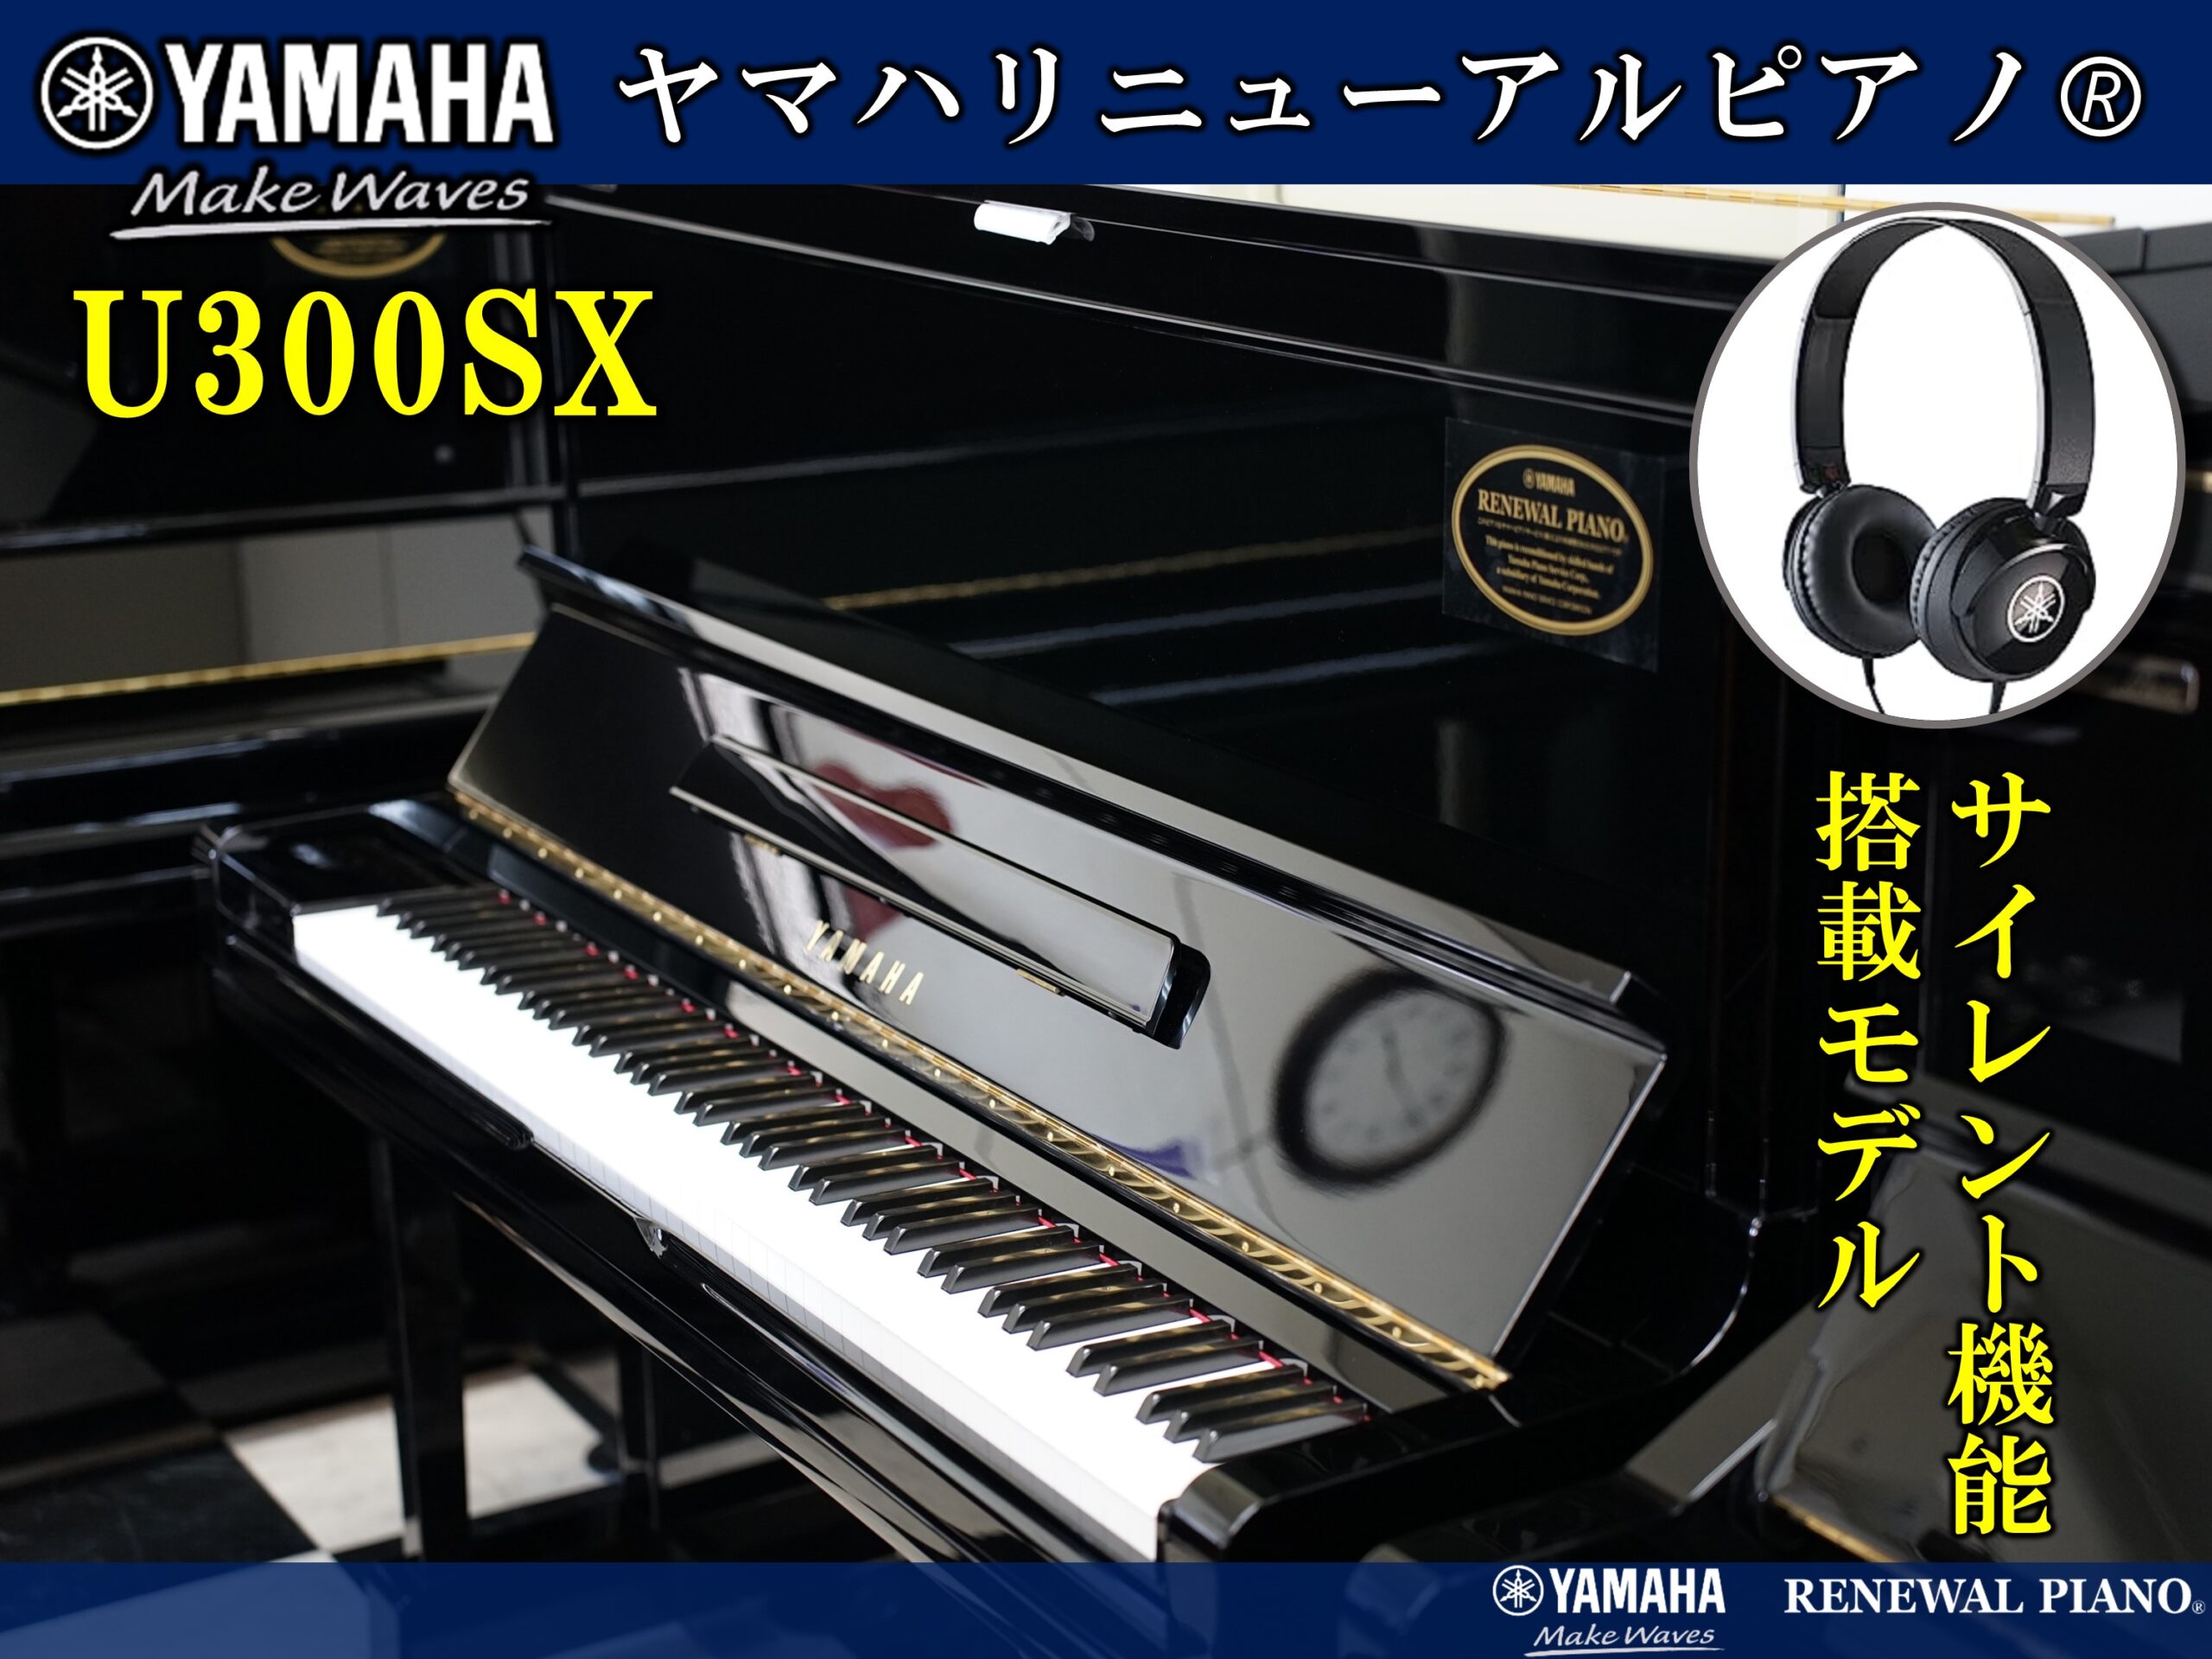 ヤマハリニューアルピアノ U300SX | 福岡のヤマハ中古ピアノなら株式